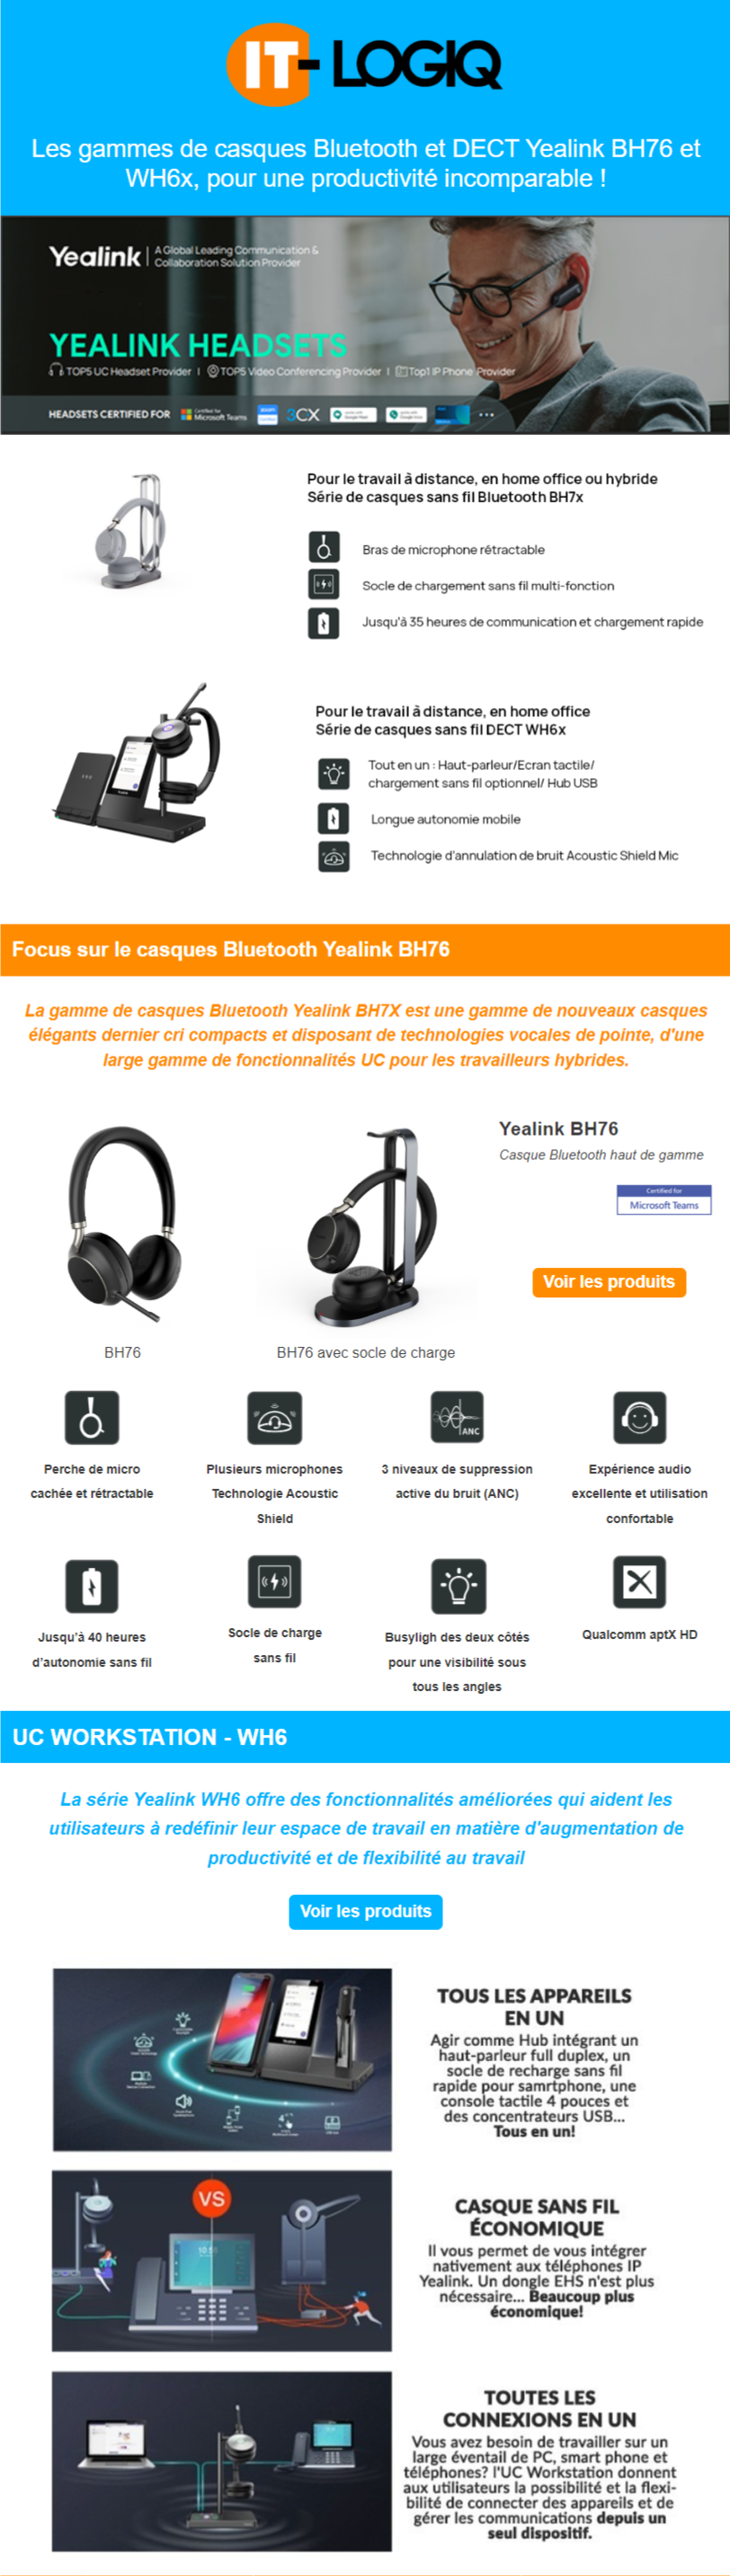 Les gammes de casques Bluetooth et DECT Yealink BH76 et WH6x